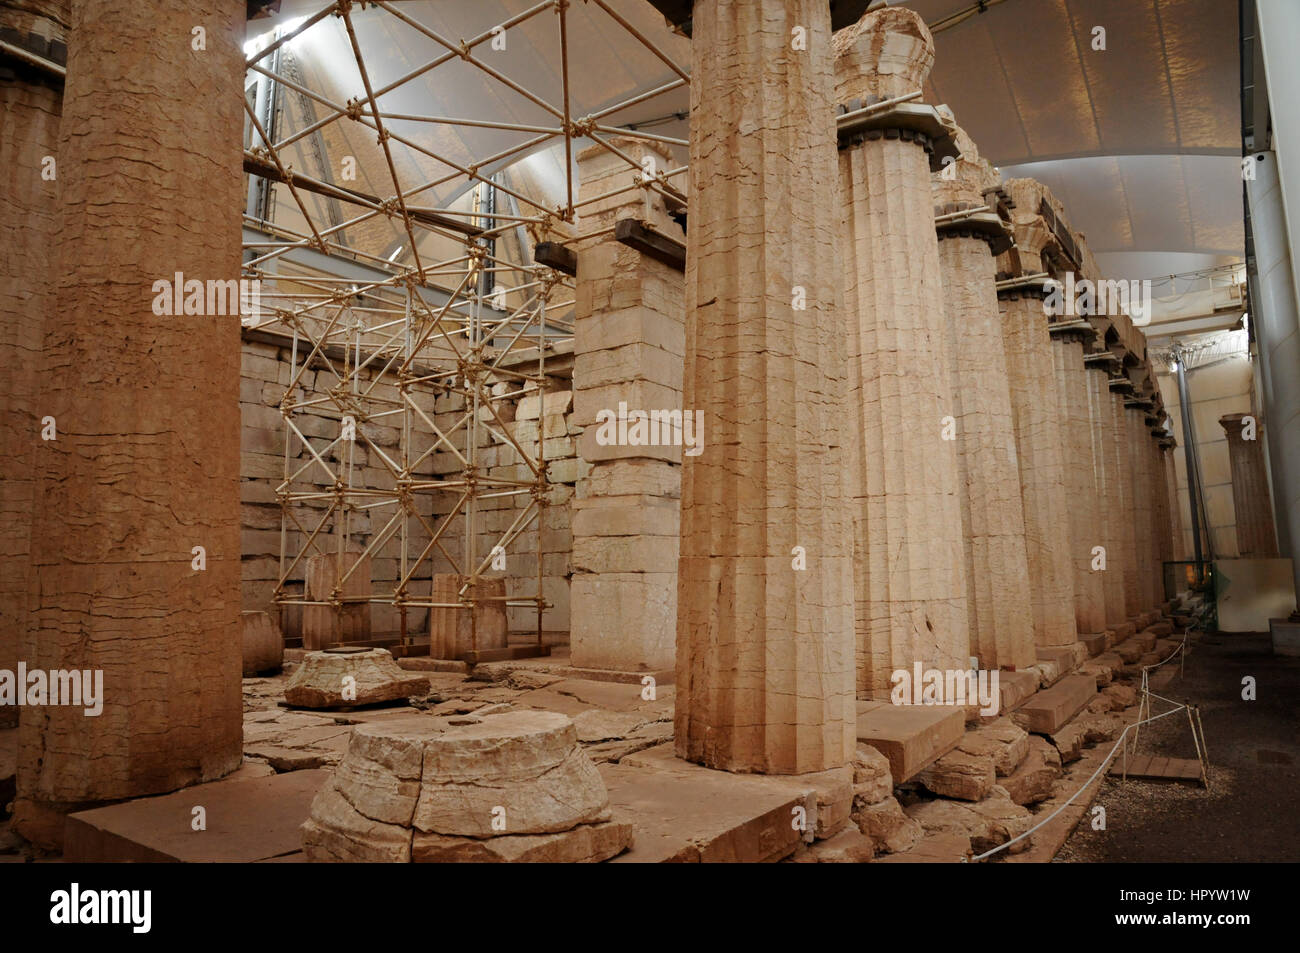 Il Tempio di Apollo a Andritsena in Arcadia regione della Grecia. Il tempio è in fase di restauro ed è coperta da una grande tenda a proteggerlo. Foto Stock